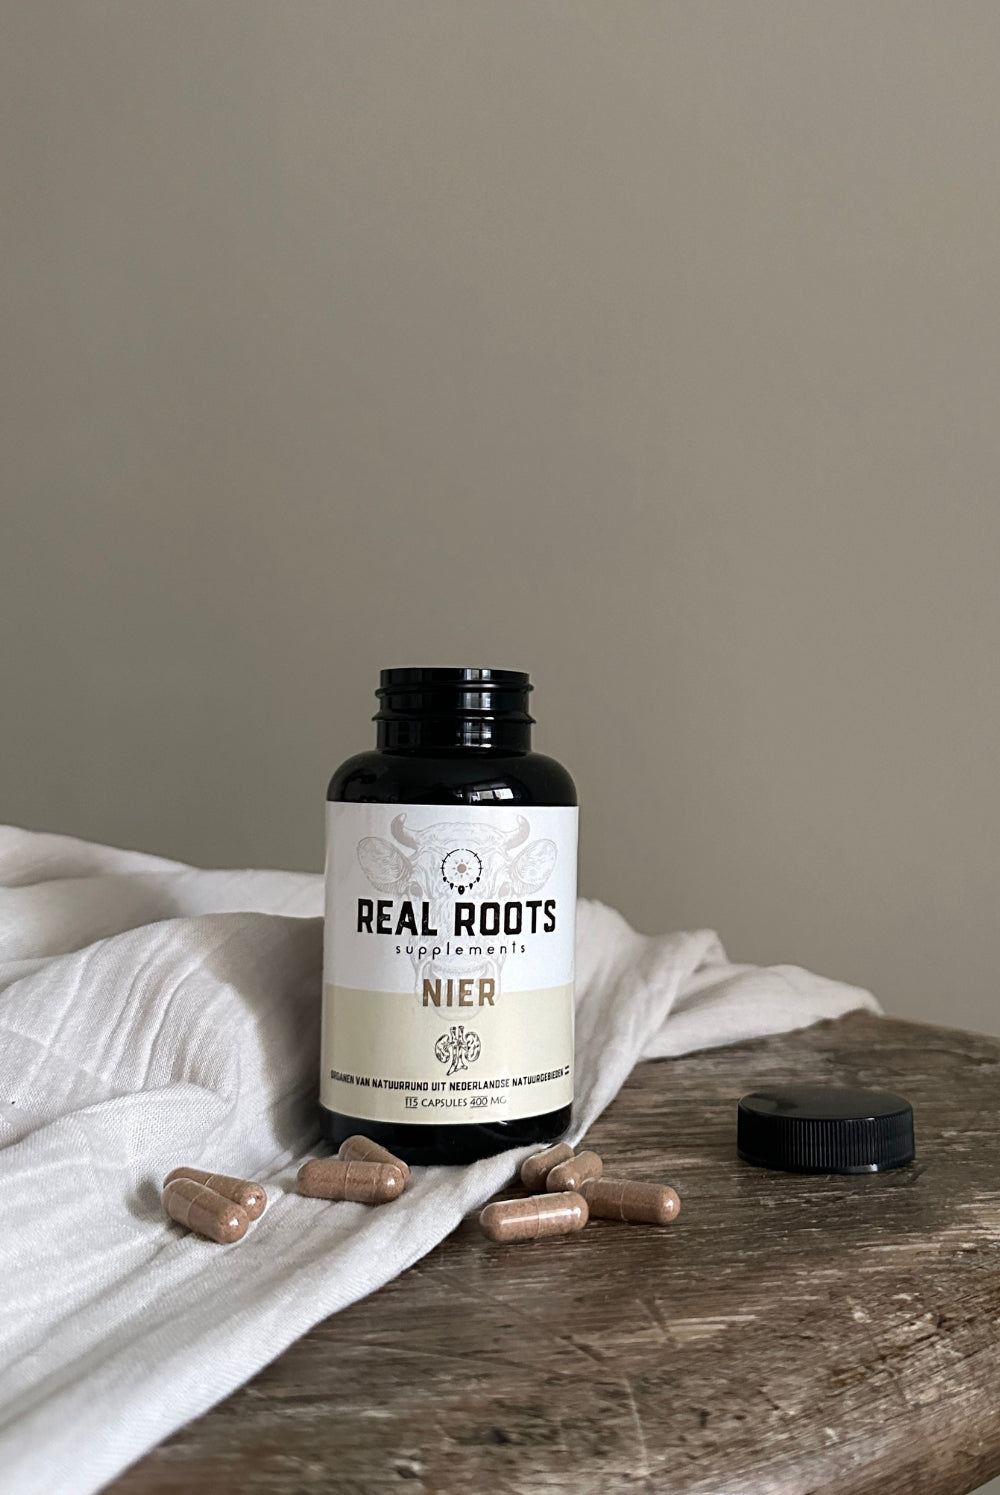 Real Roots Nier Orgaansupplementen